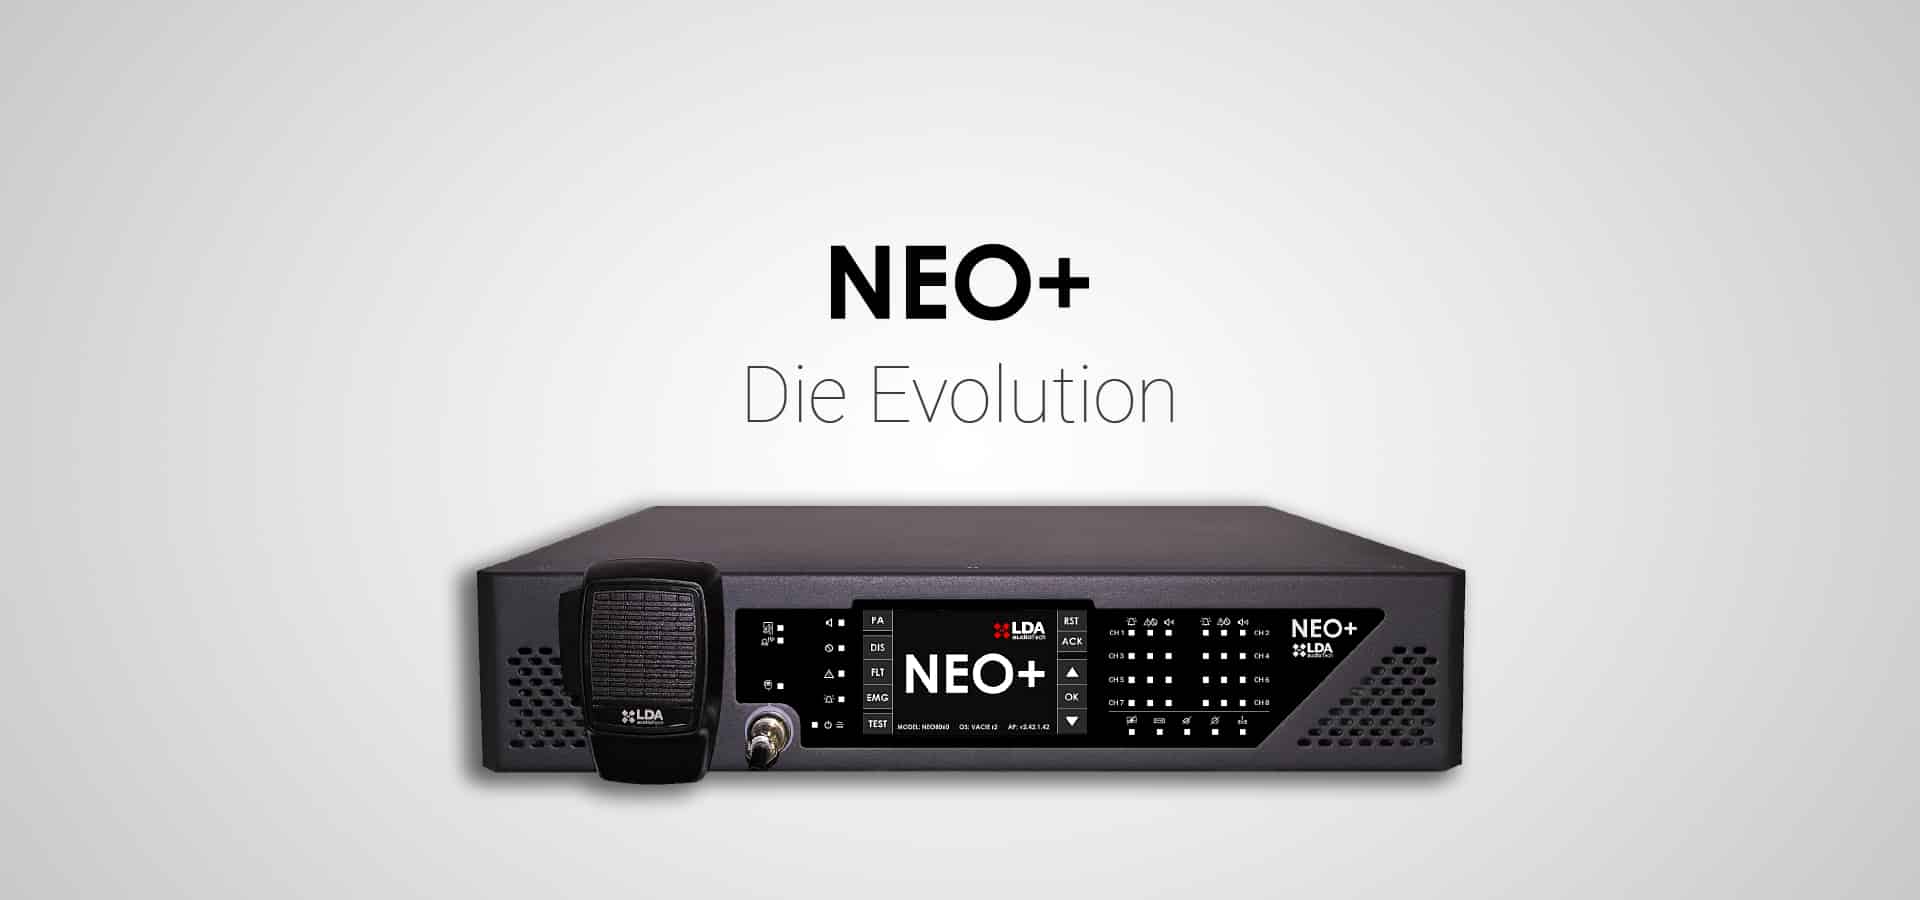 NEO+ Die Evolution